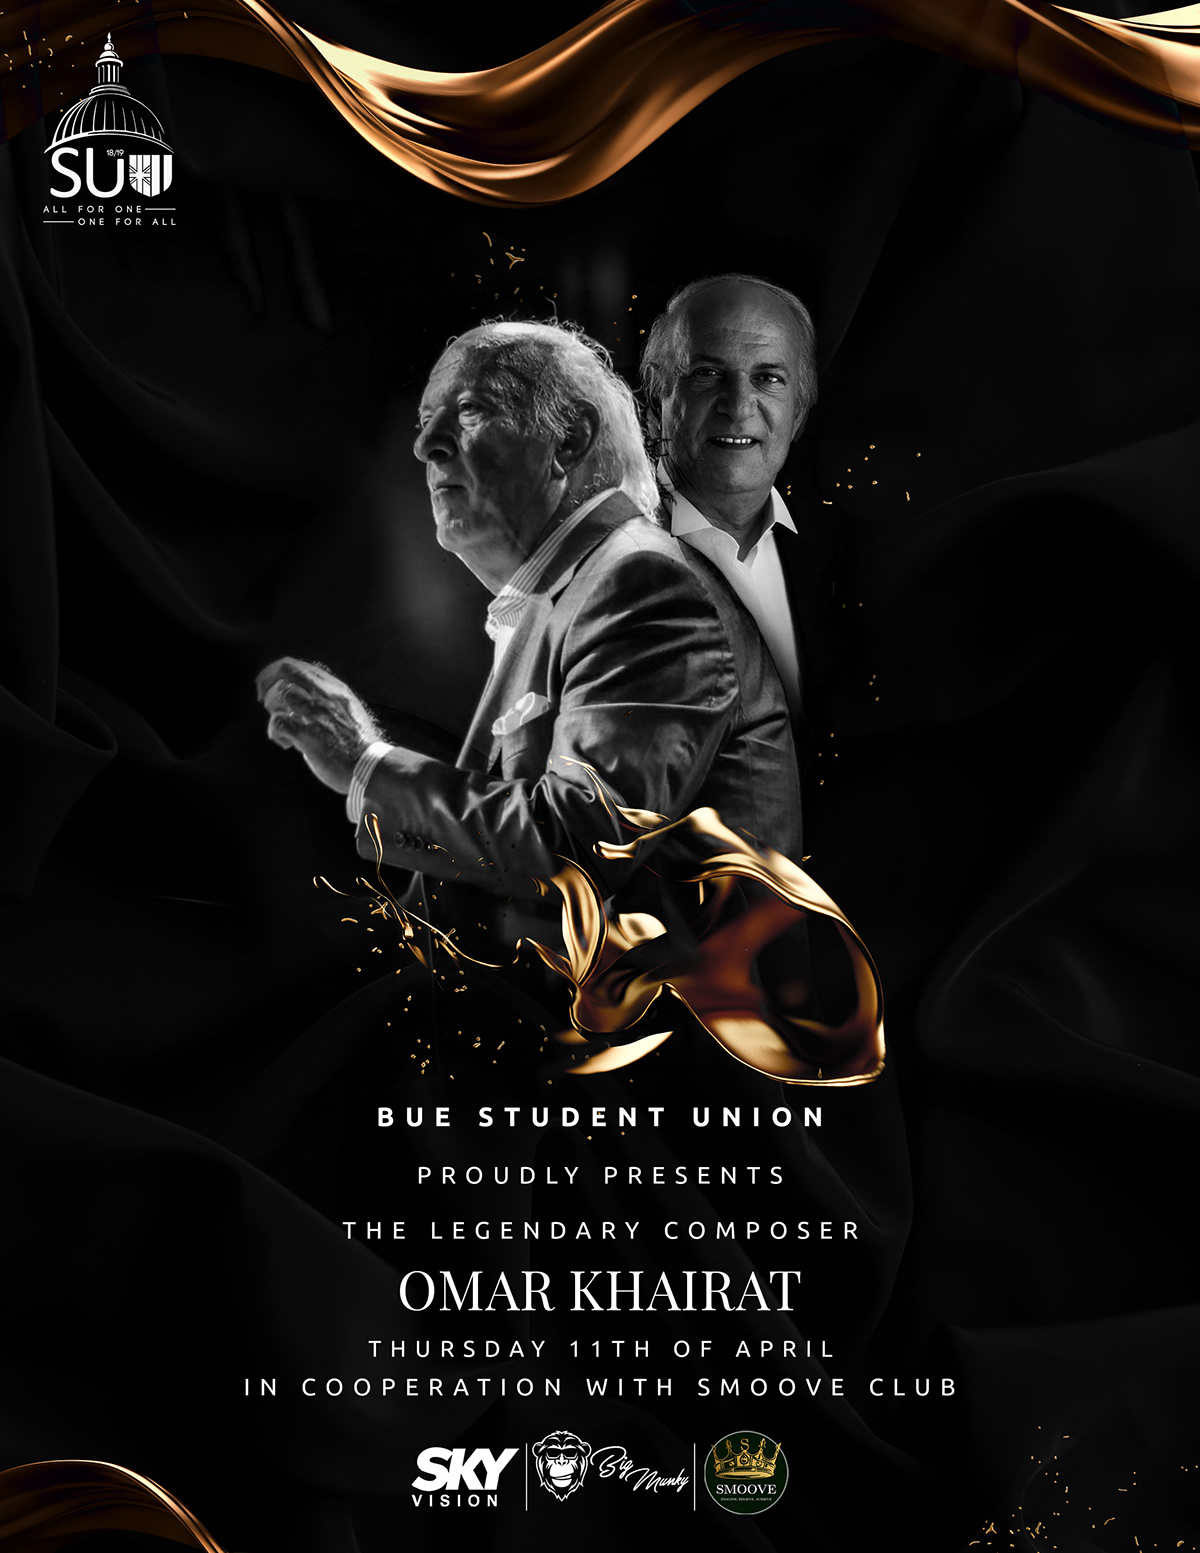 omar khairat design poster cairo egypt Kuwait Invitation graphic